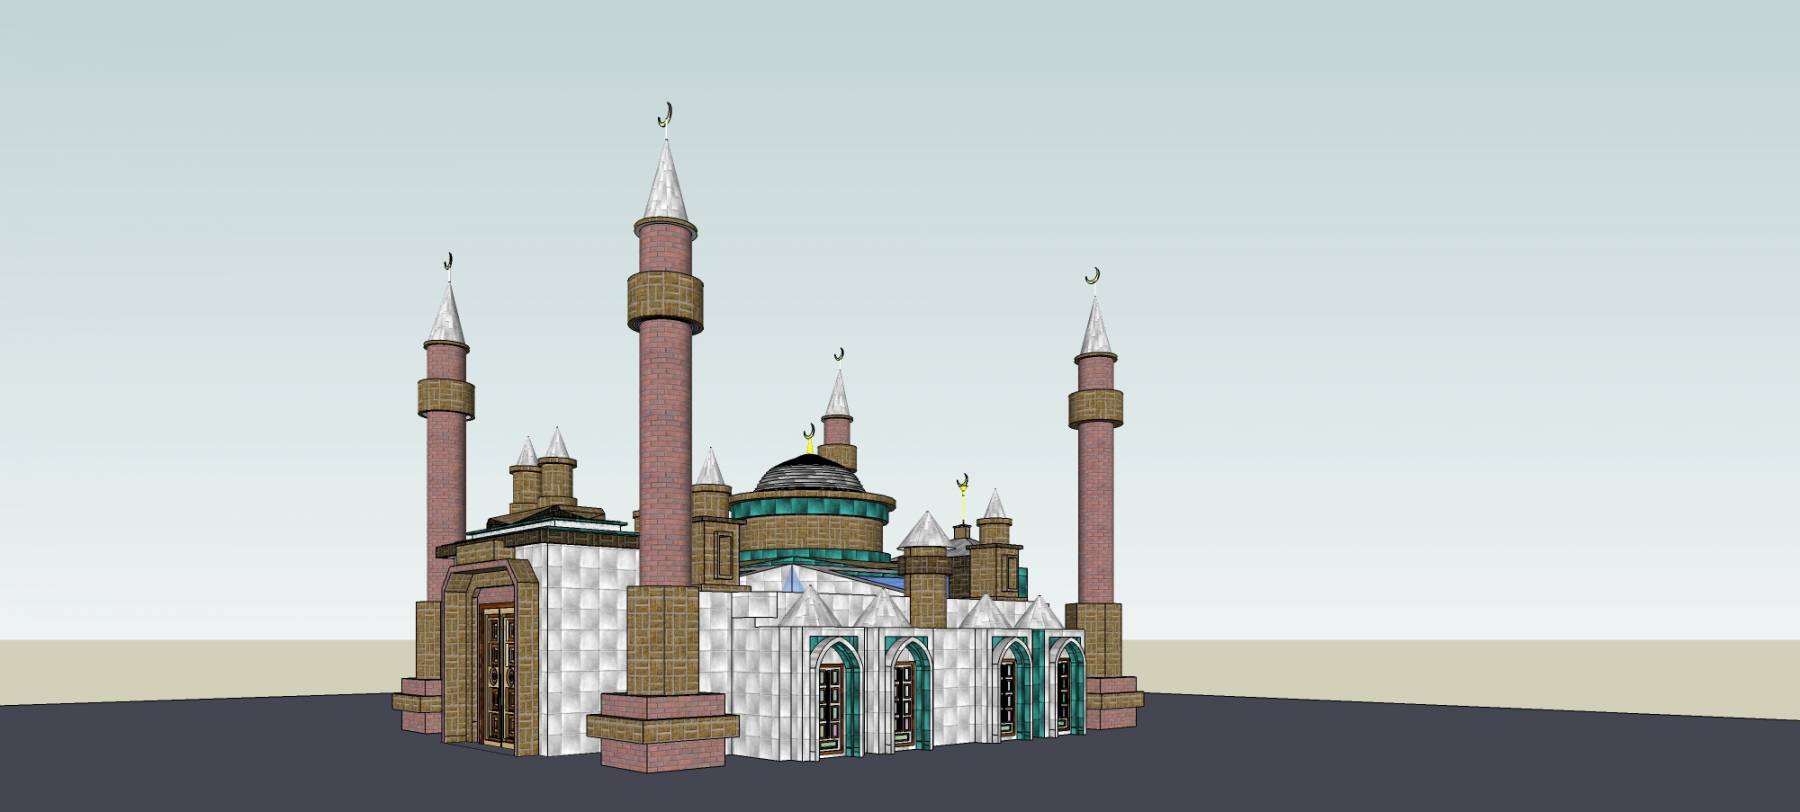 清真寺